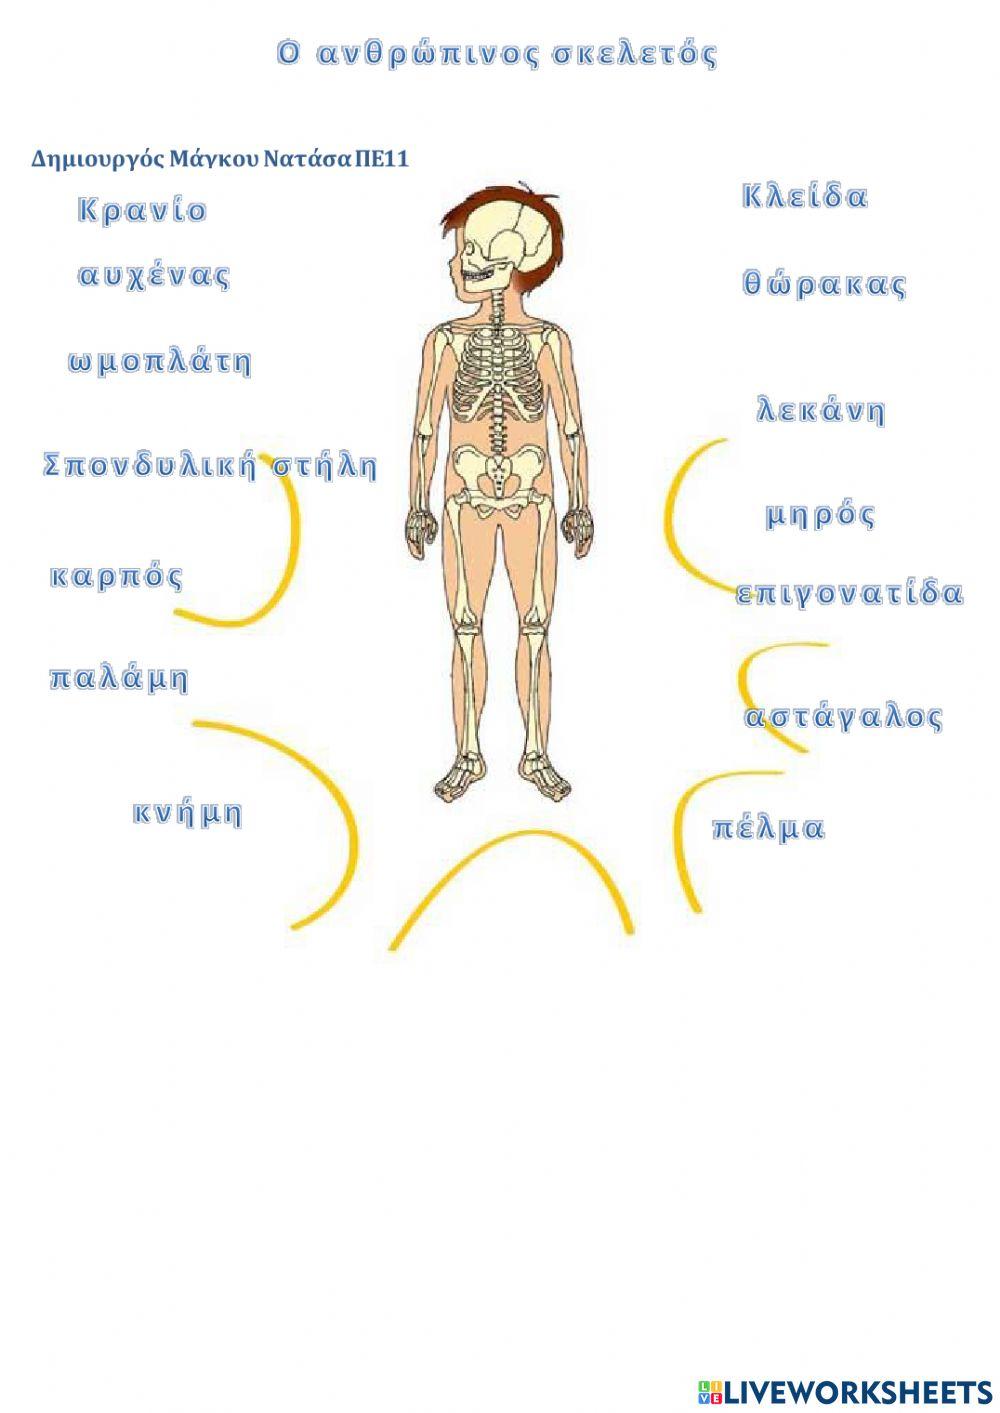 Ο ανθρώπινος σκελετός